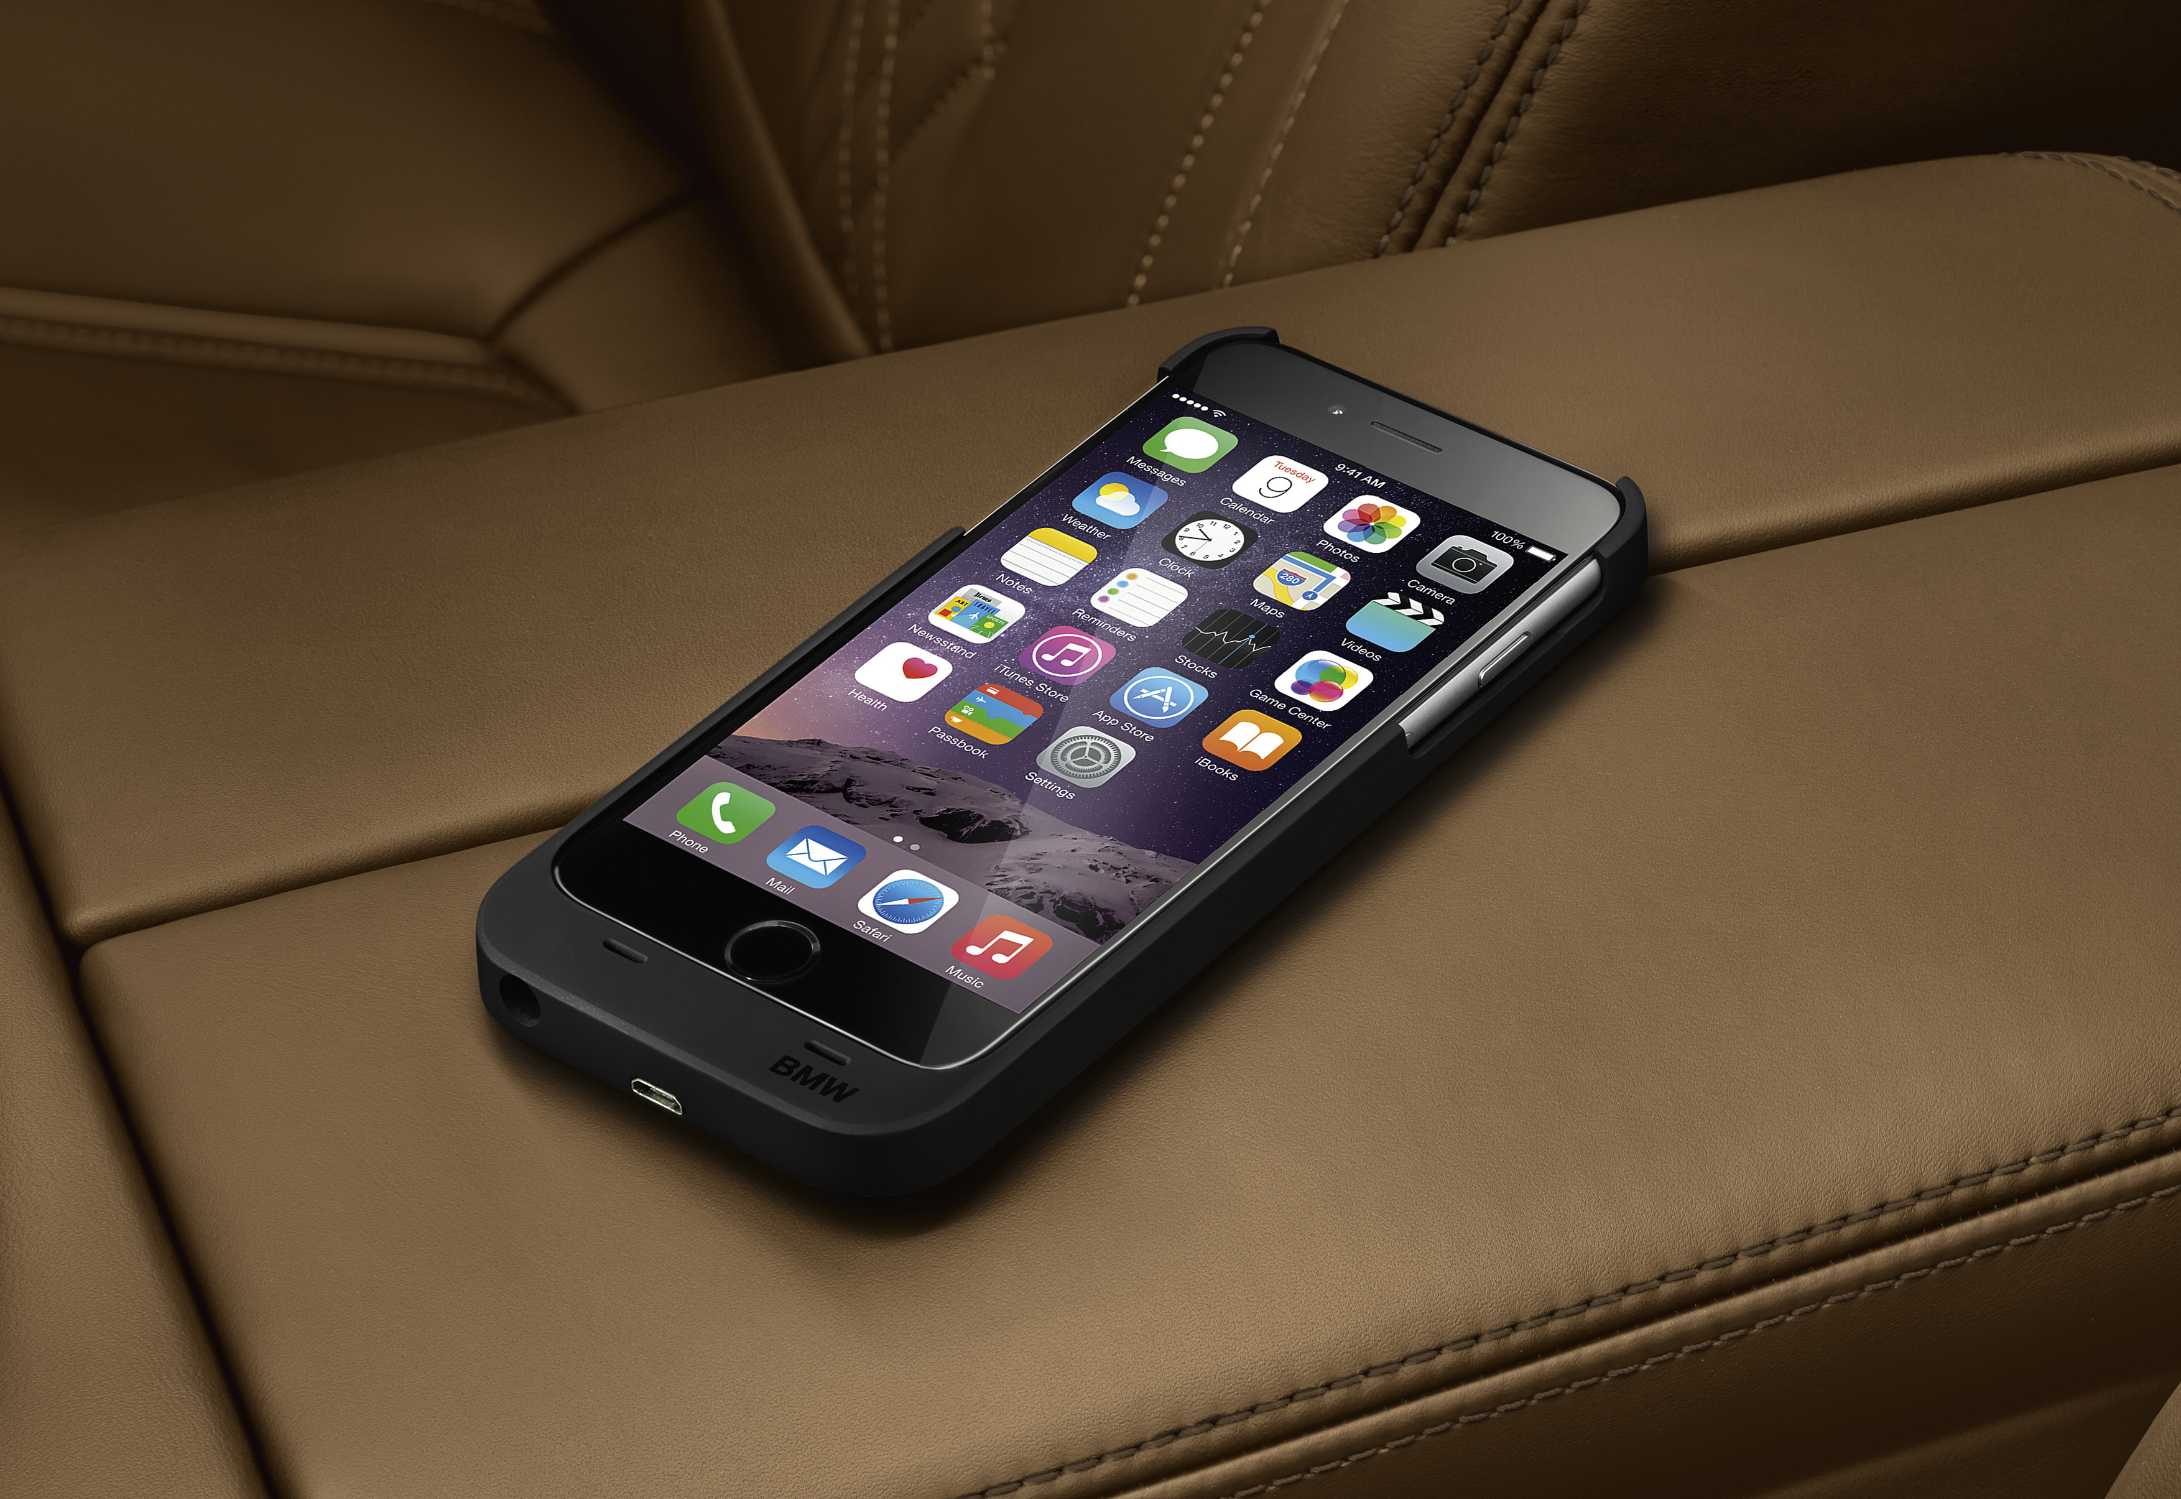 Laad uw iPhone voortaan draadloos met nieuw accessoire.